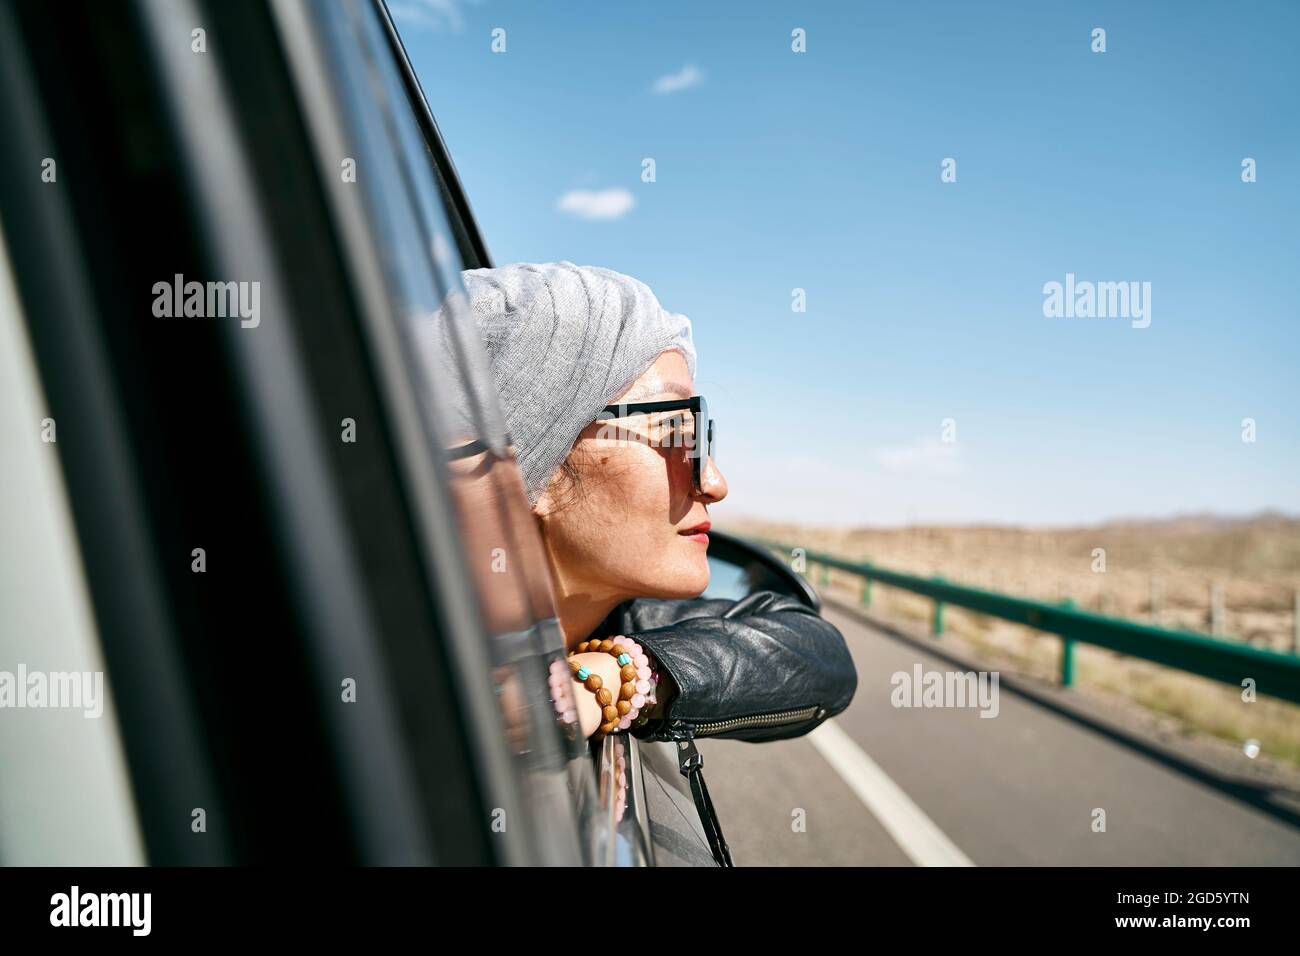 donna asiatica turista che si stacca testa fuori dal finestrino posteriore di un'auto e godendo di un viaggio su strada Foto Stock